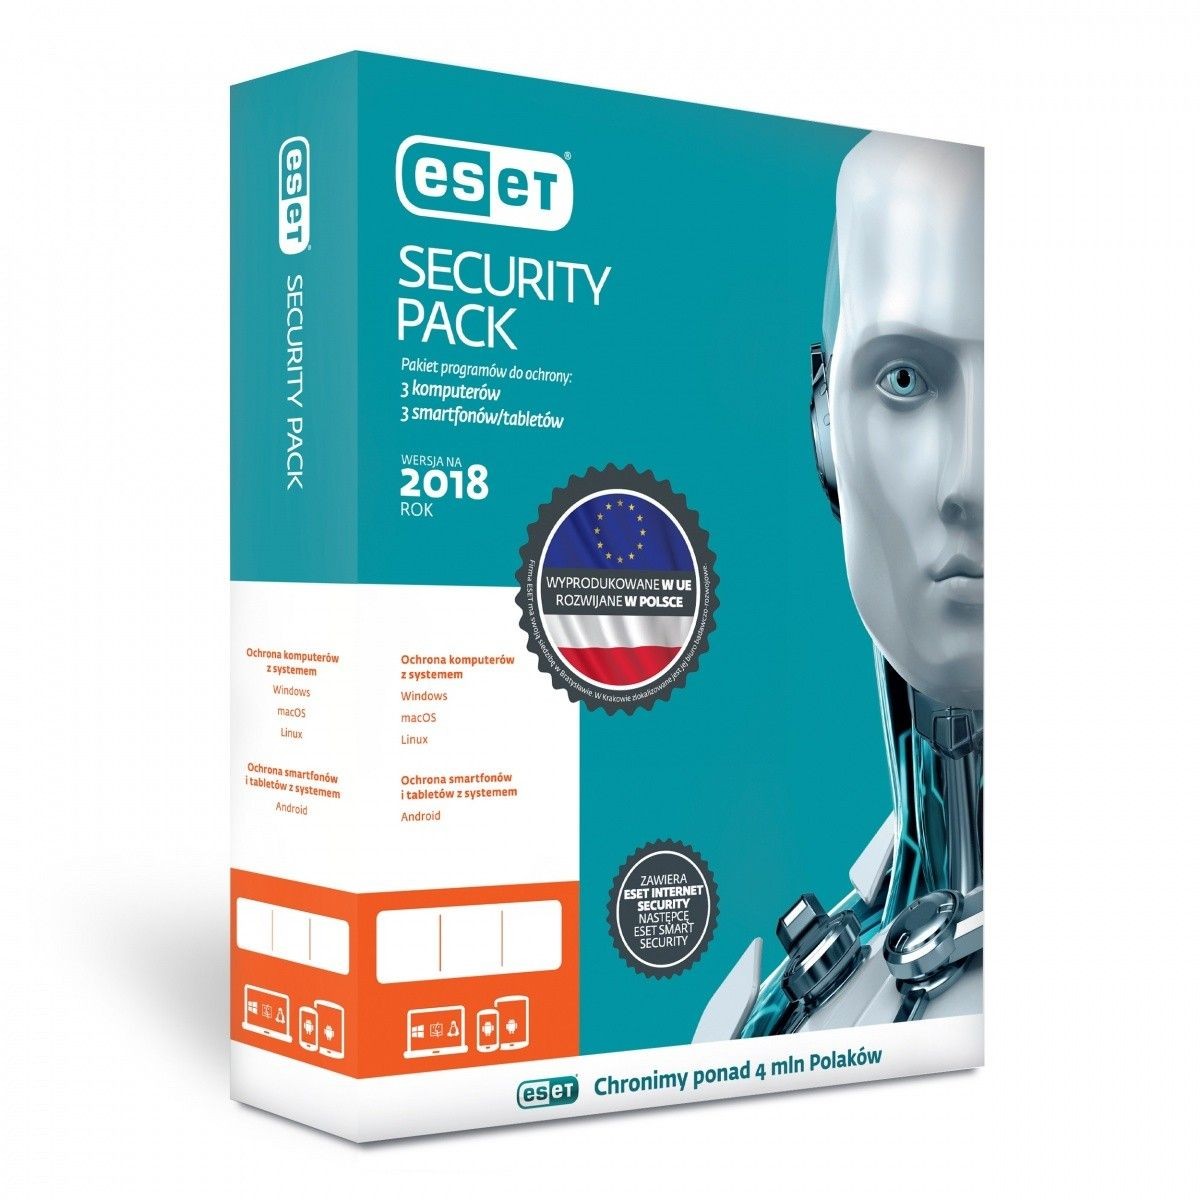 Eset Security Pack przedłużenie licencji o 1 rok (3 komputery i 3 smartfony)